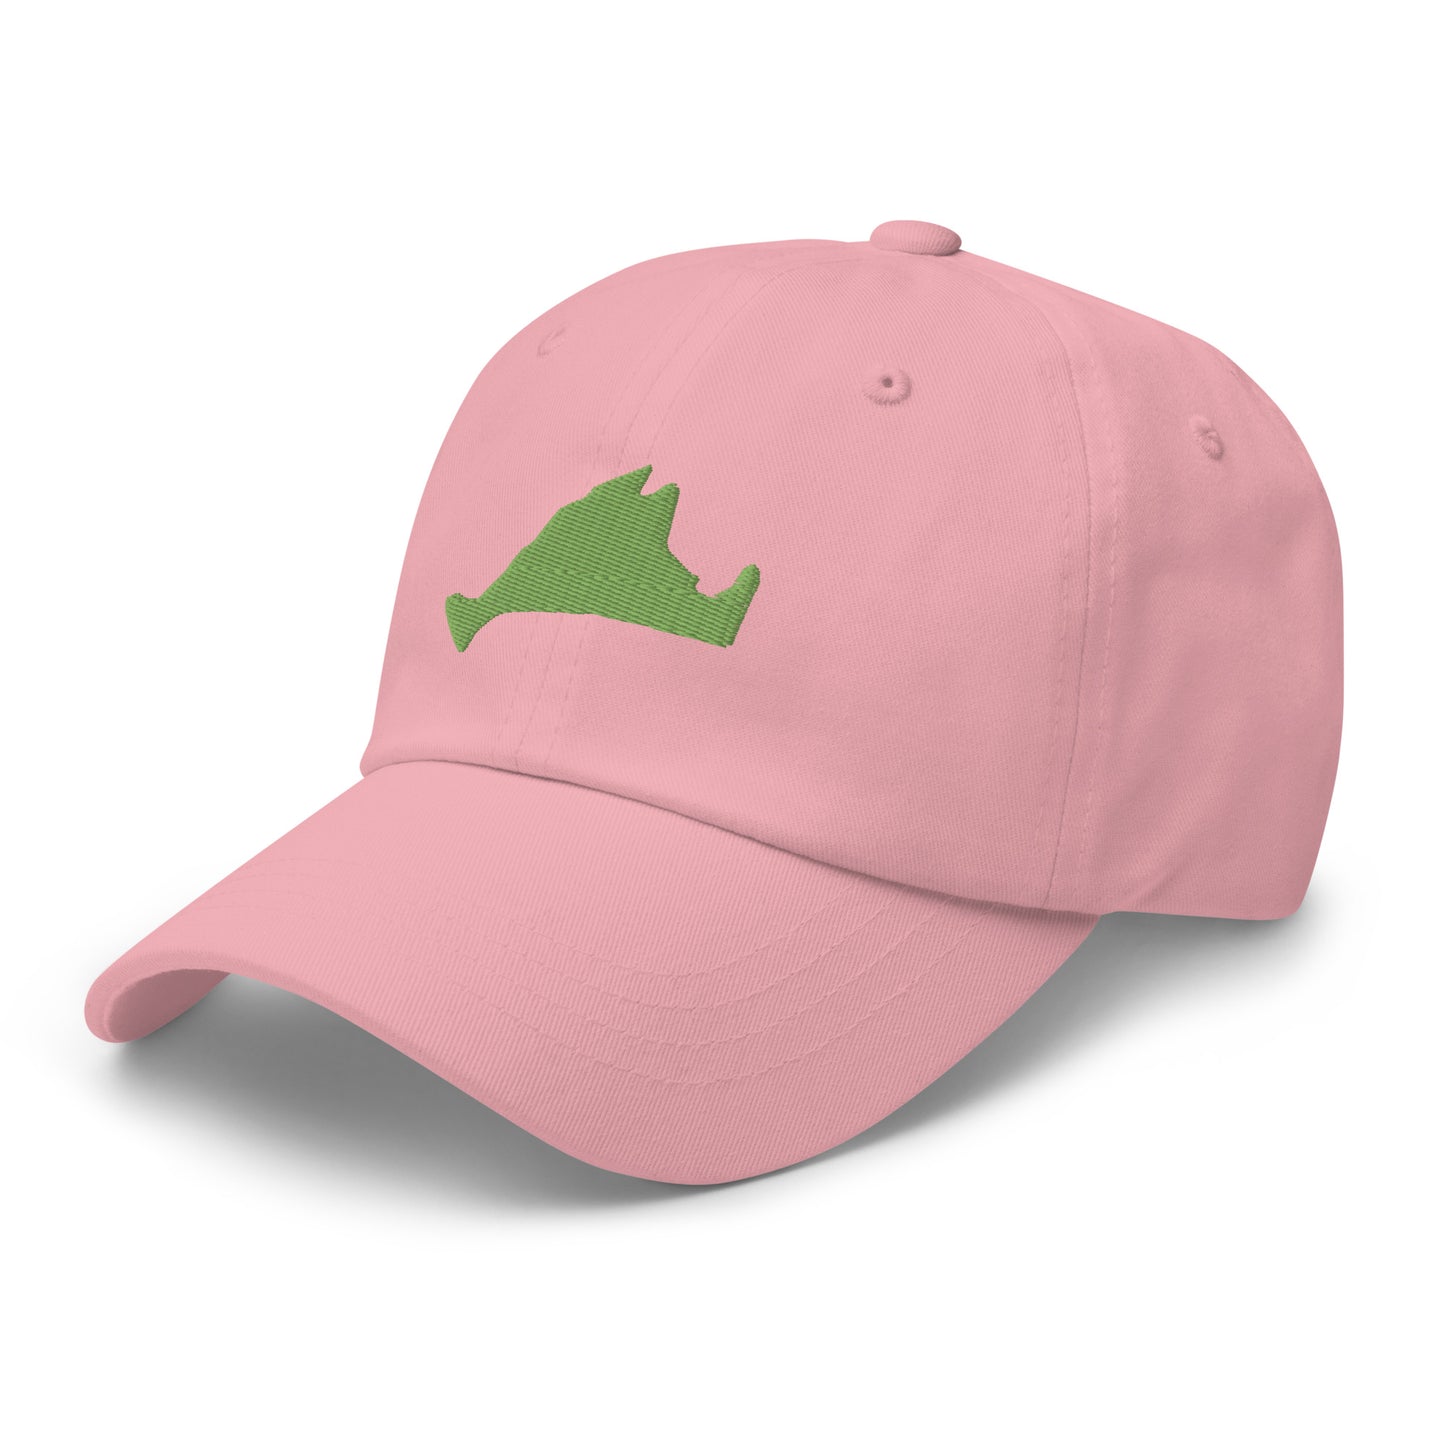 Martha's Vineyard Dad Hat - Green on Pink